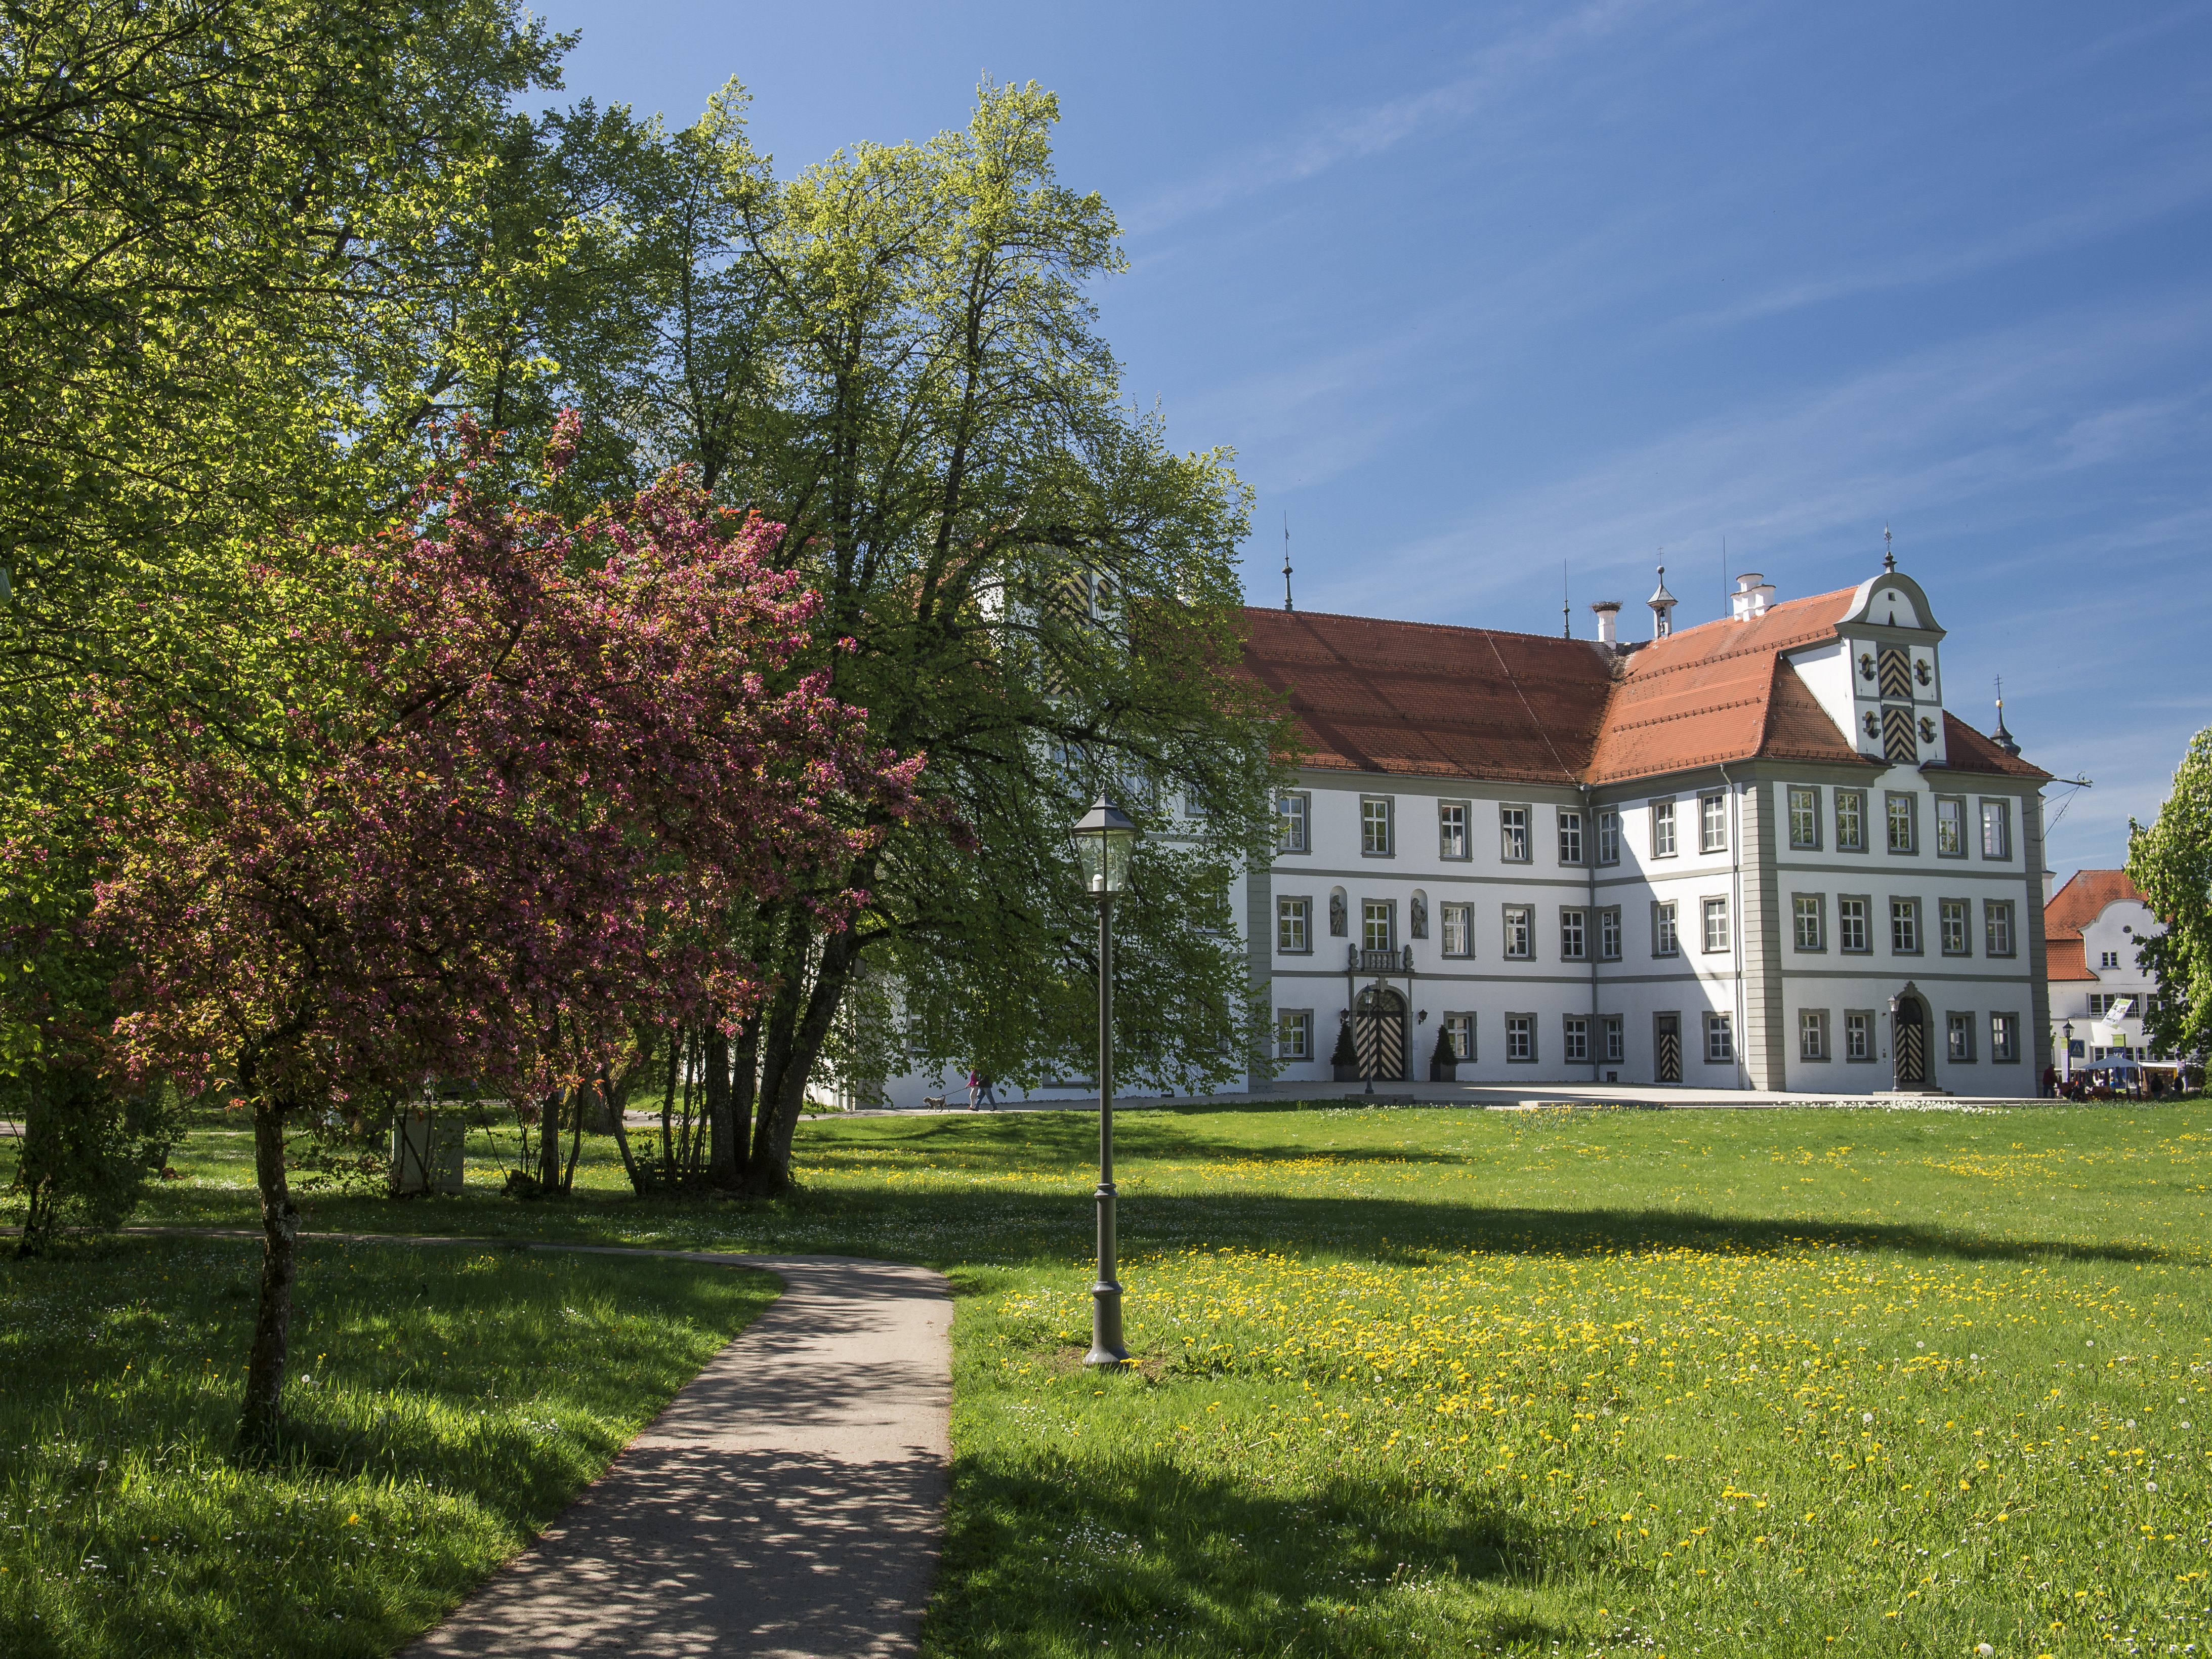 Neues Schloss Kißlegg